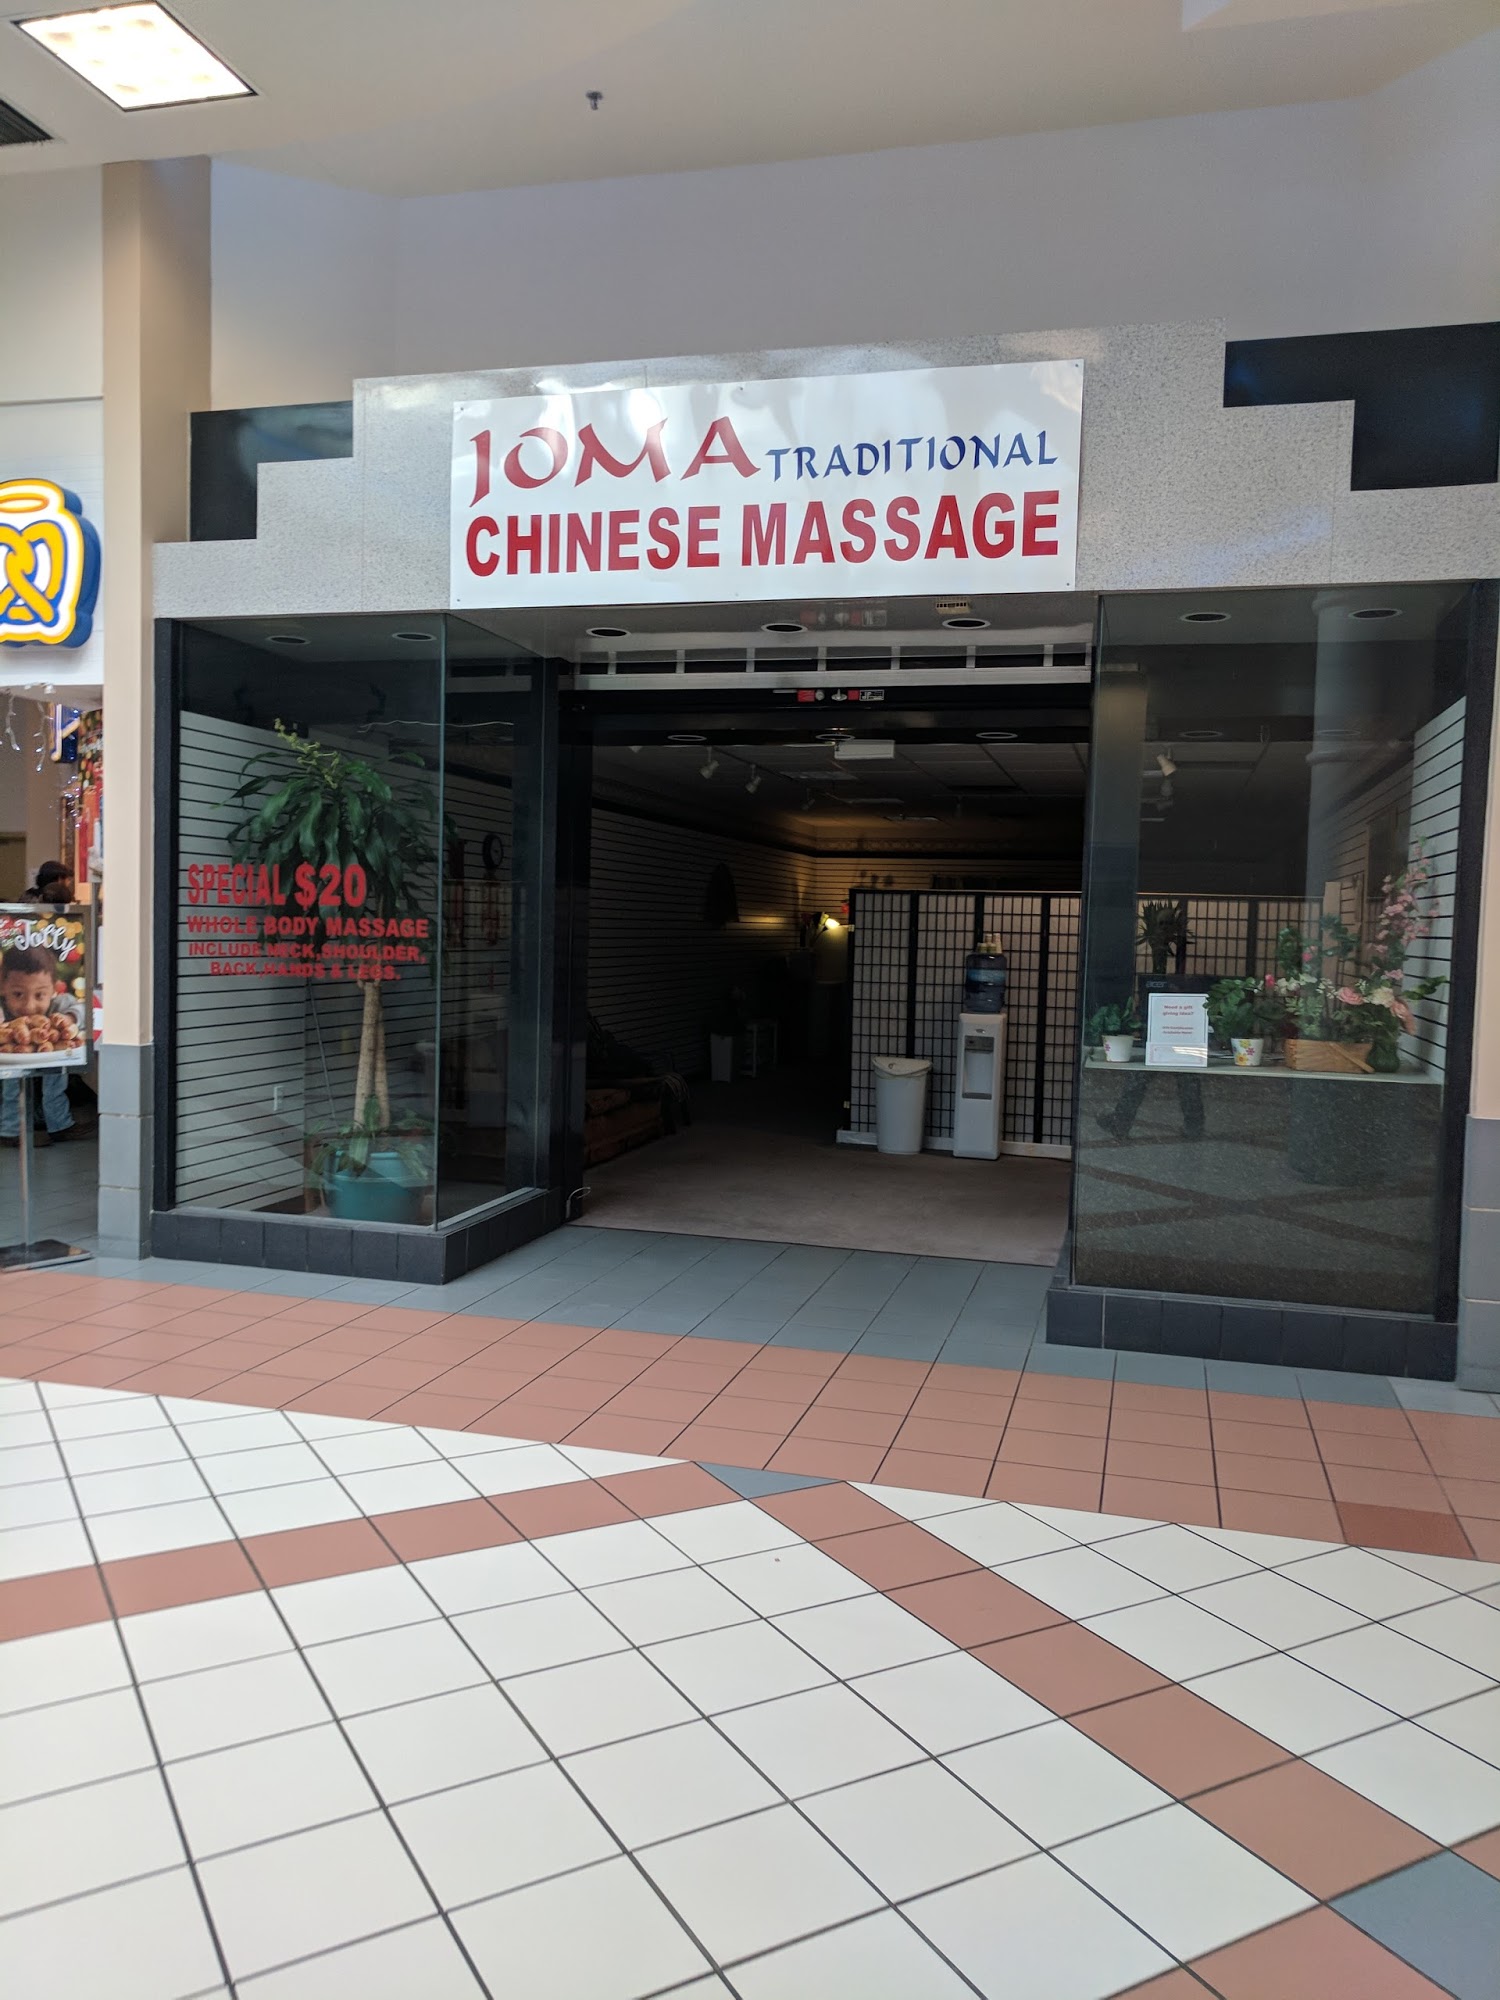 Joma Traditional Chinese Massage